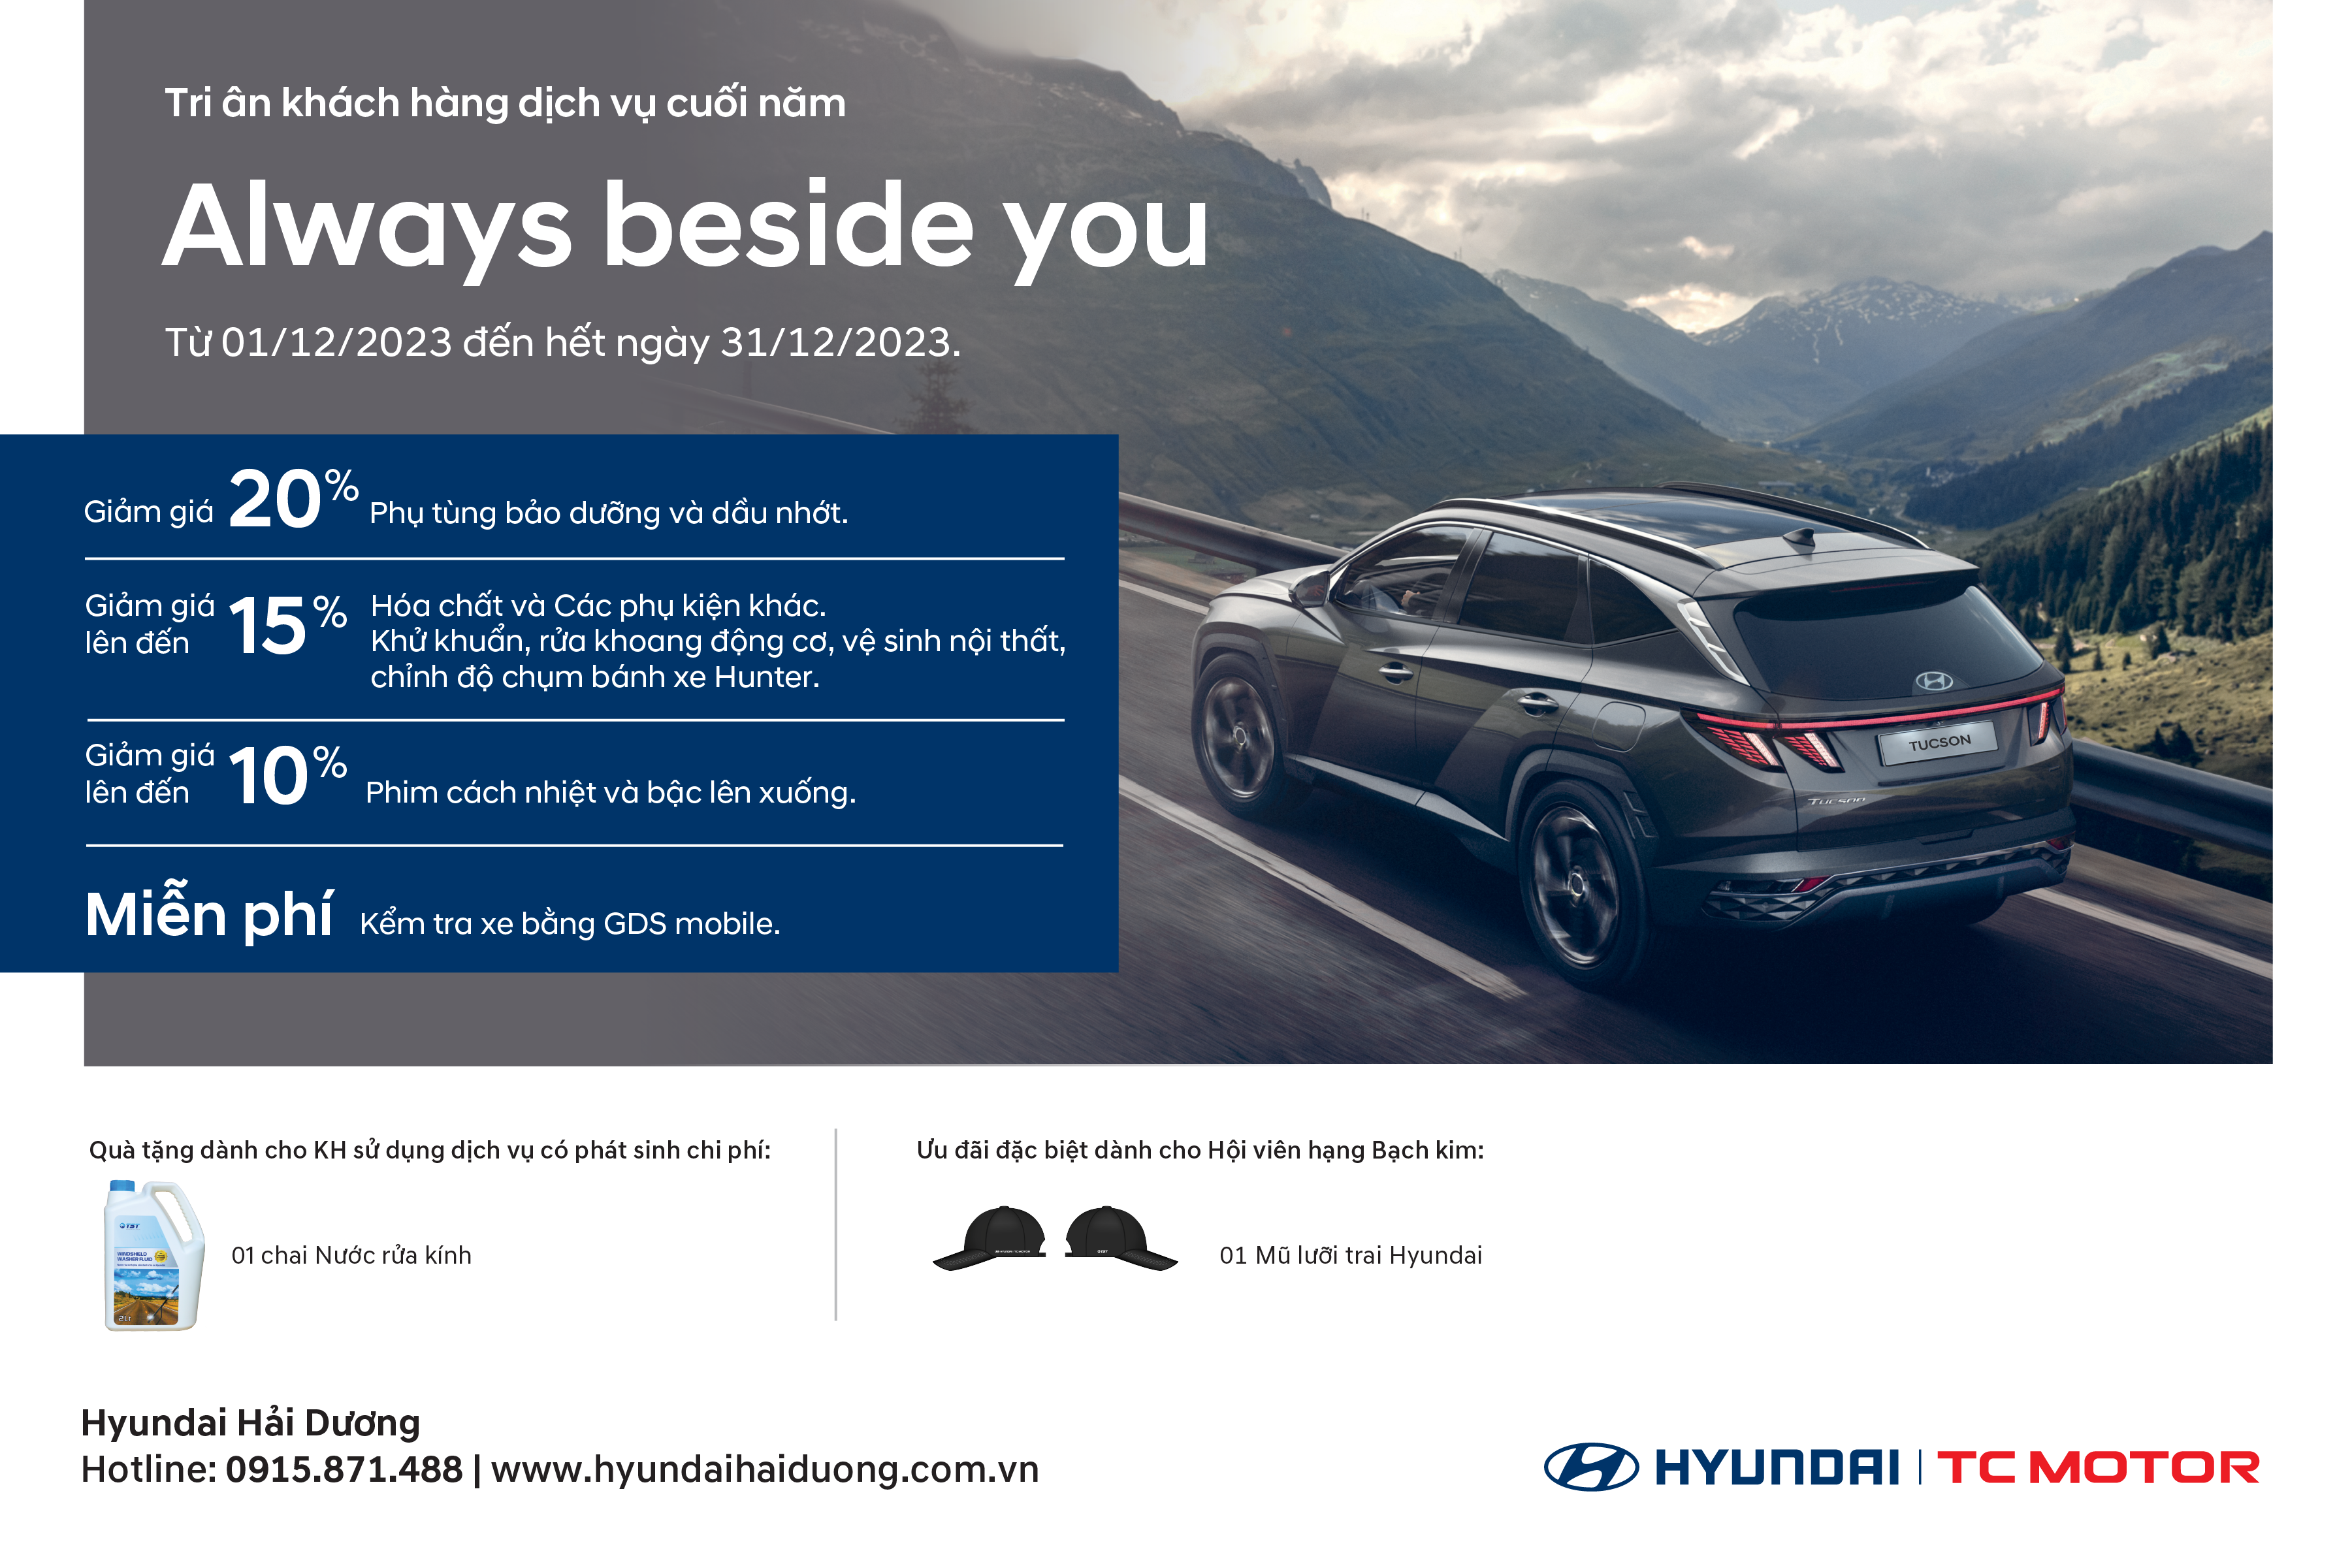 Hyundai Hải Dương tri ân KH dịch vụ cuối năm – ALWAYS BESIDE YOU